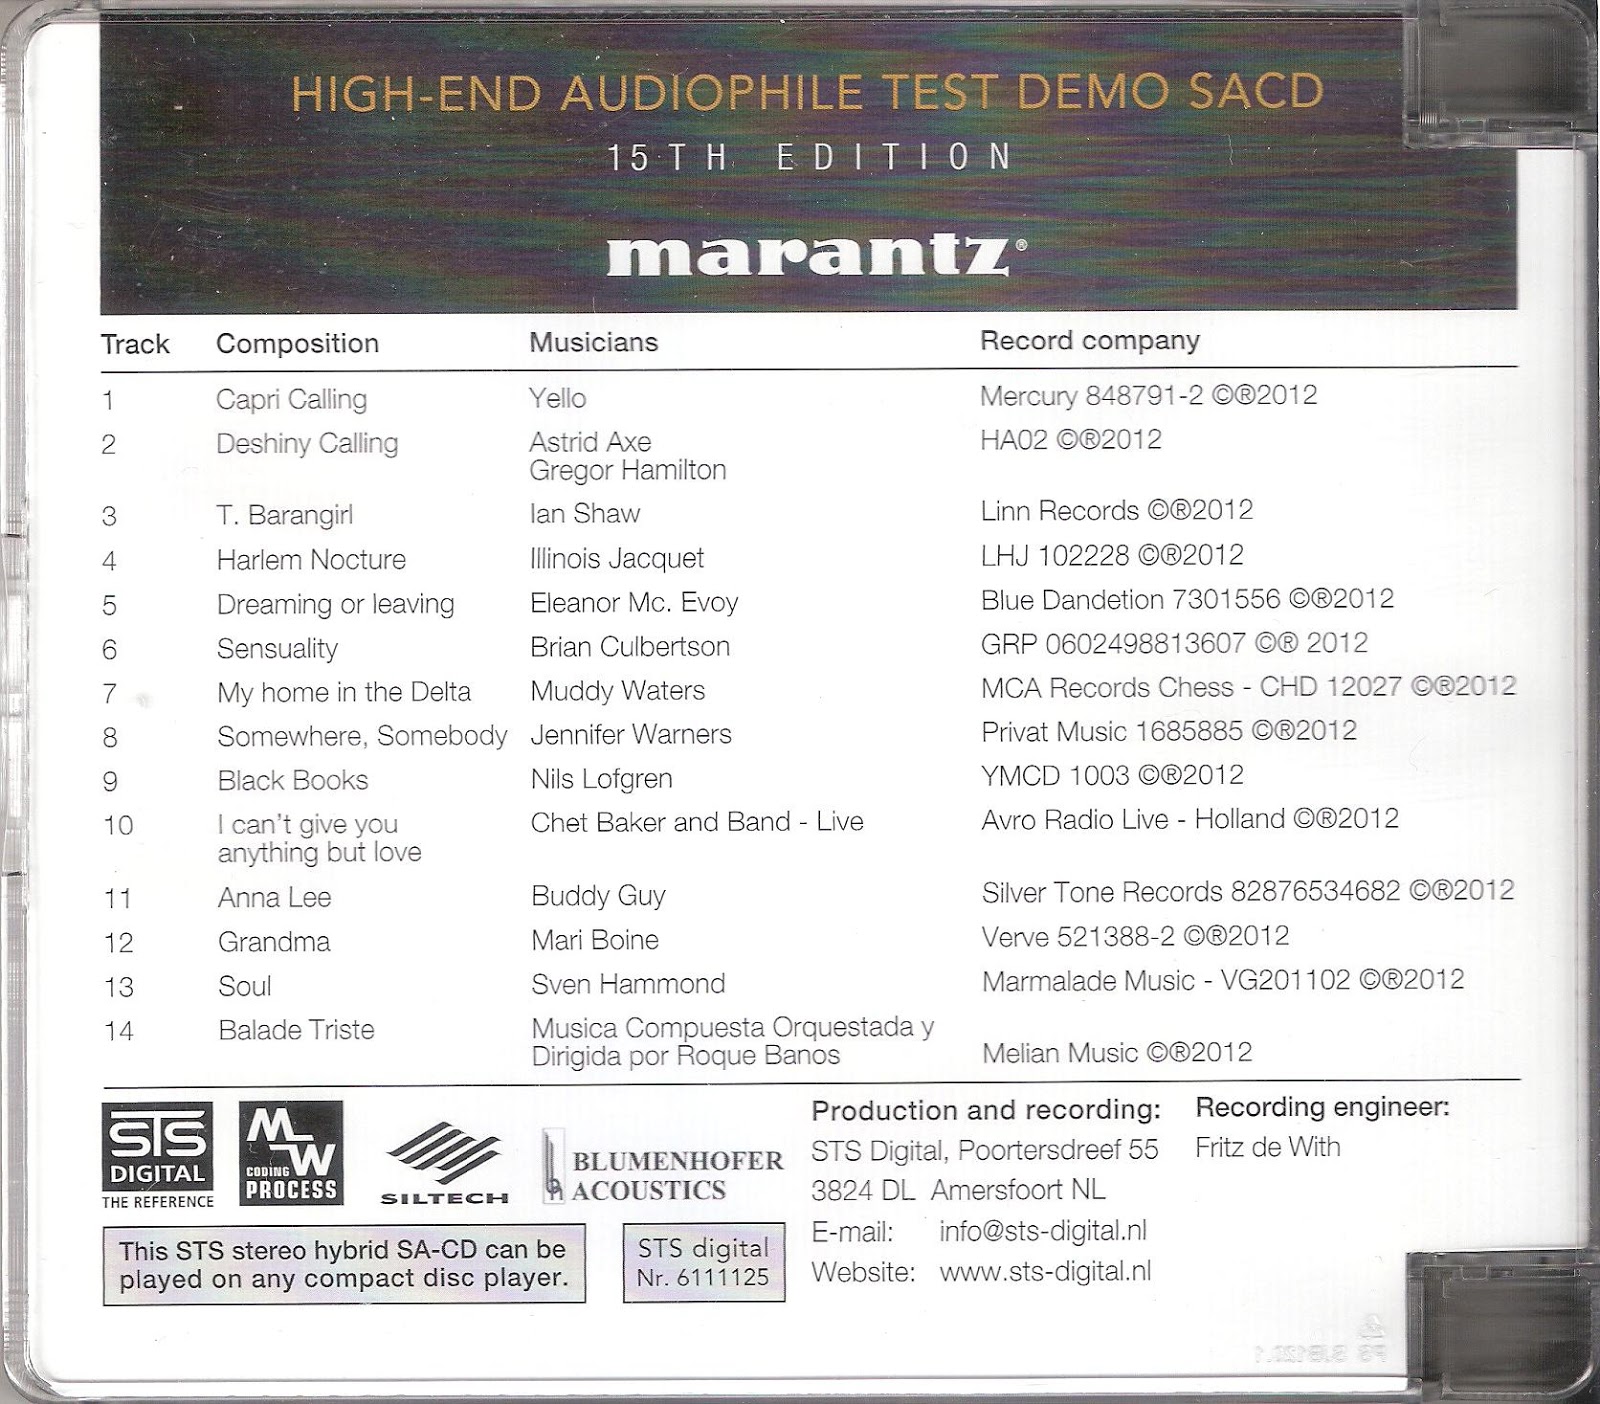 Demo тестирование. Marantz Hi-end Audiophile Test Demo SACD. Marantz High-end Audiophile Test Demo SACD, 15-th Edition. Marantz Hi-end Audiophile Test. Marantz High end SACD.